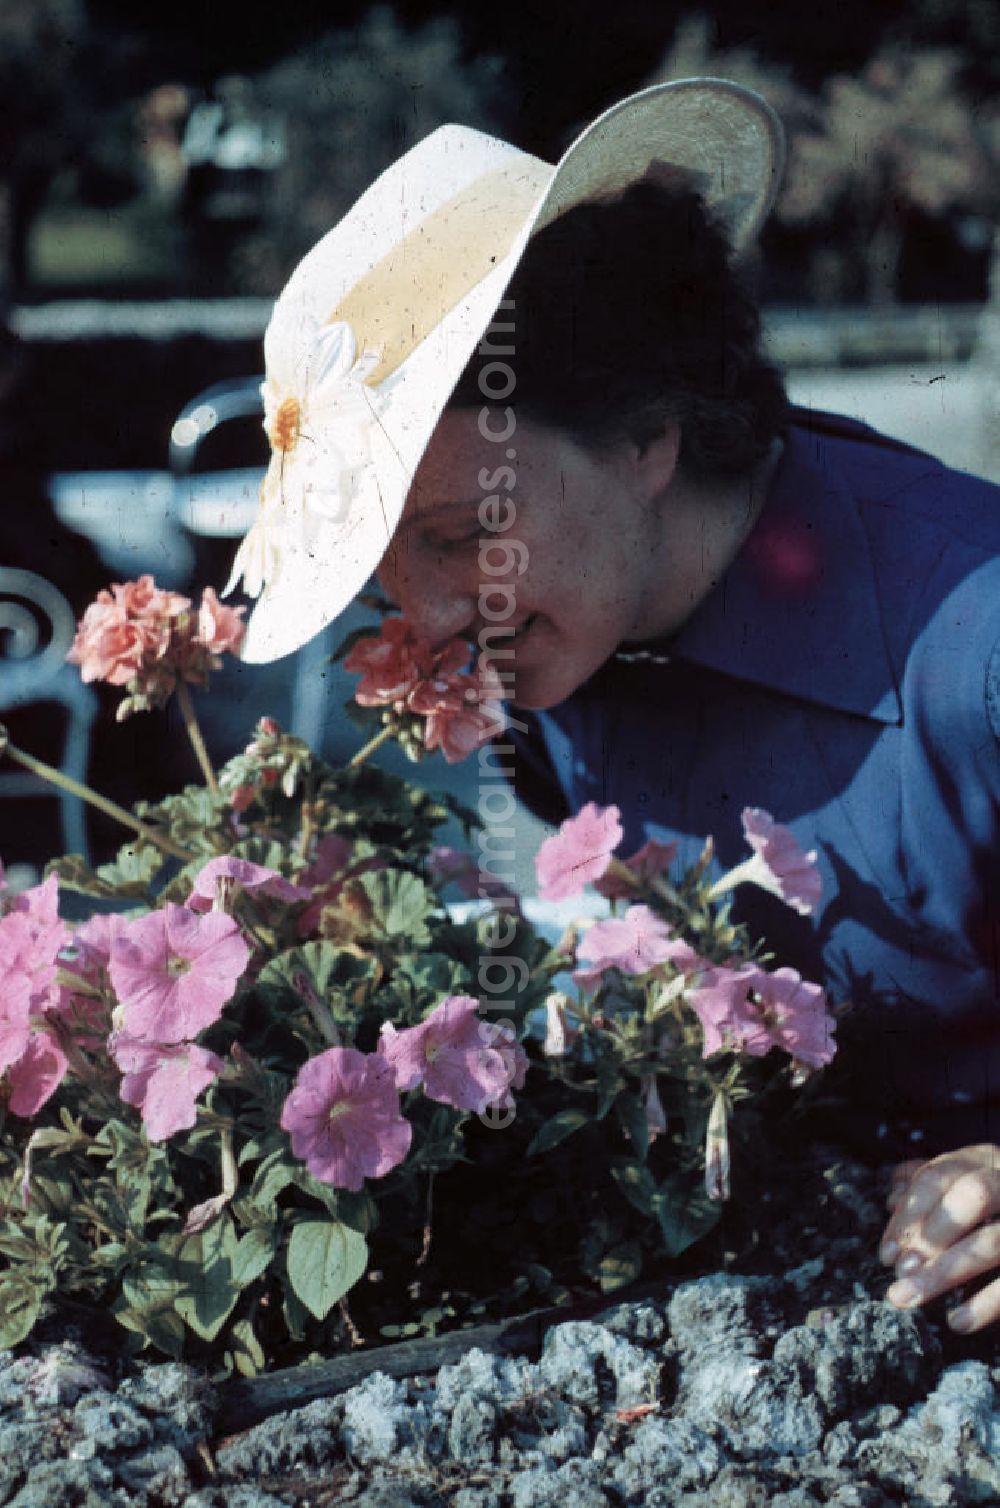 GDR image archive: Merseburg - Portrait-Aufnahme: Frau mit Hut schnuppert an Blumen in Merseburg. Portrait photo of a woman with a hat.